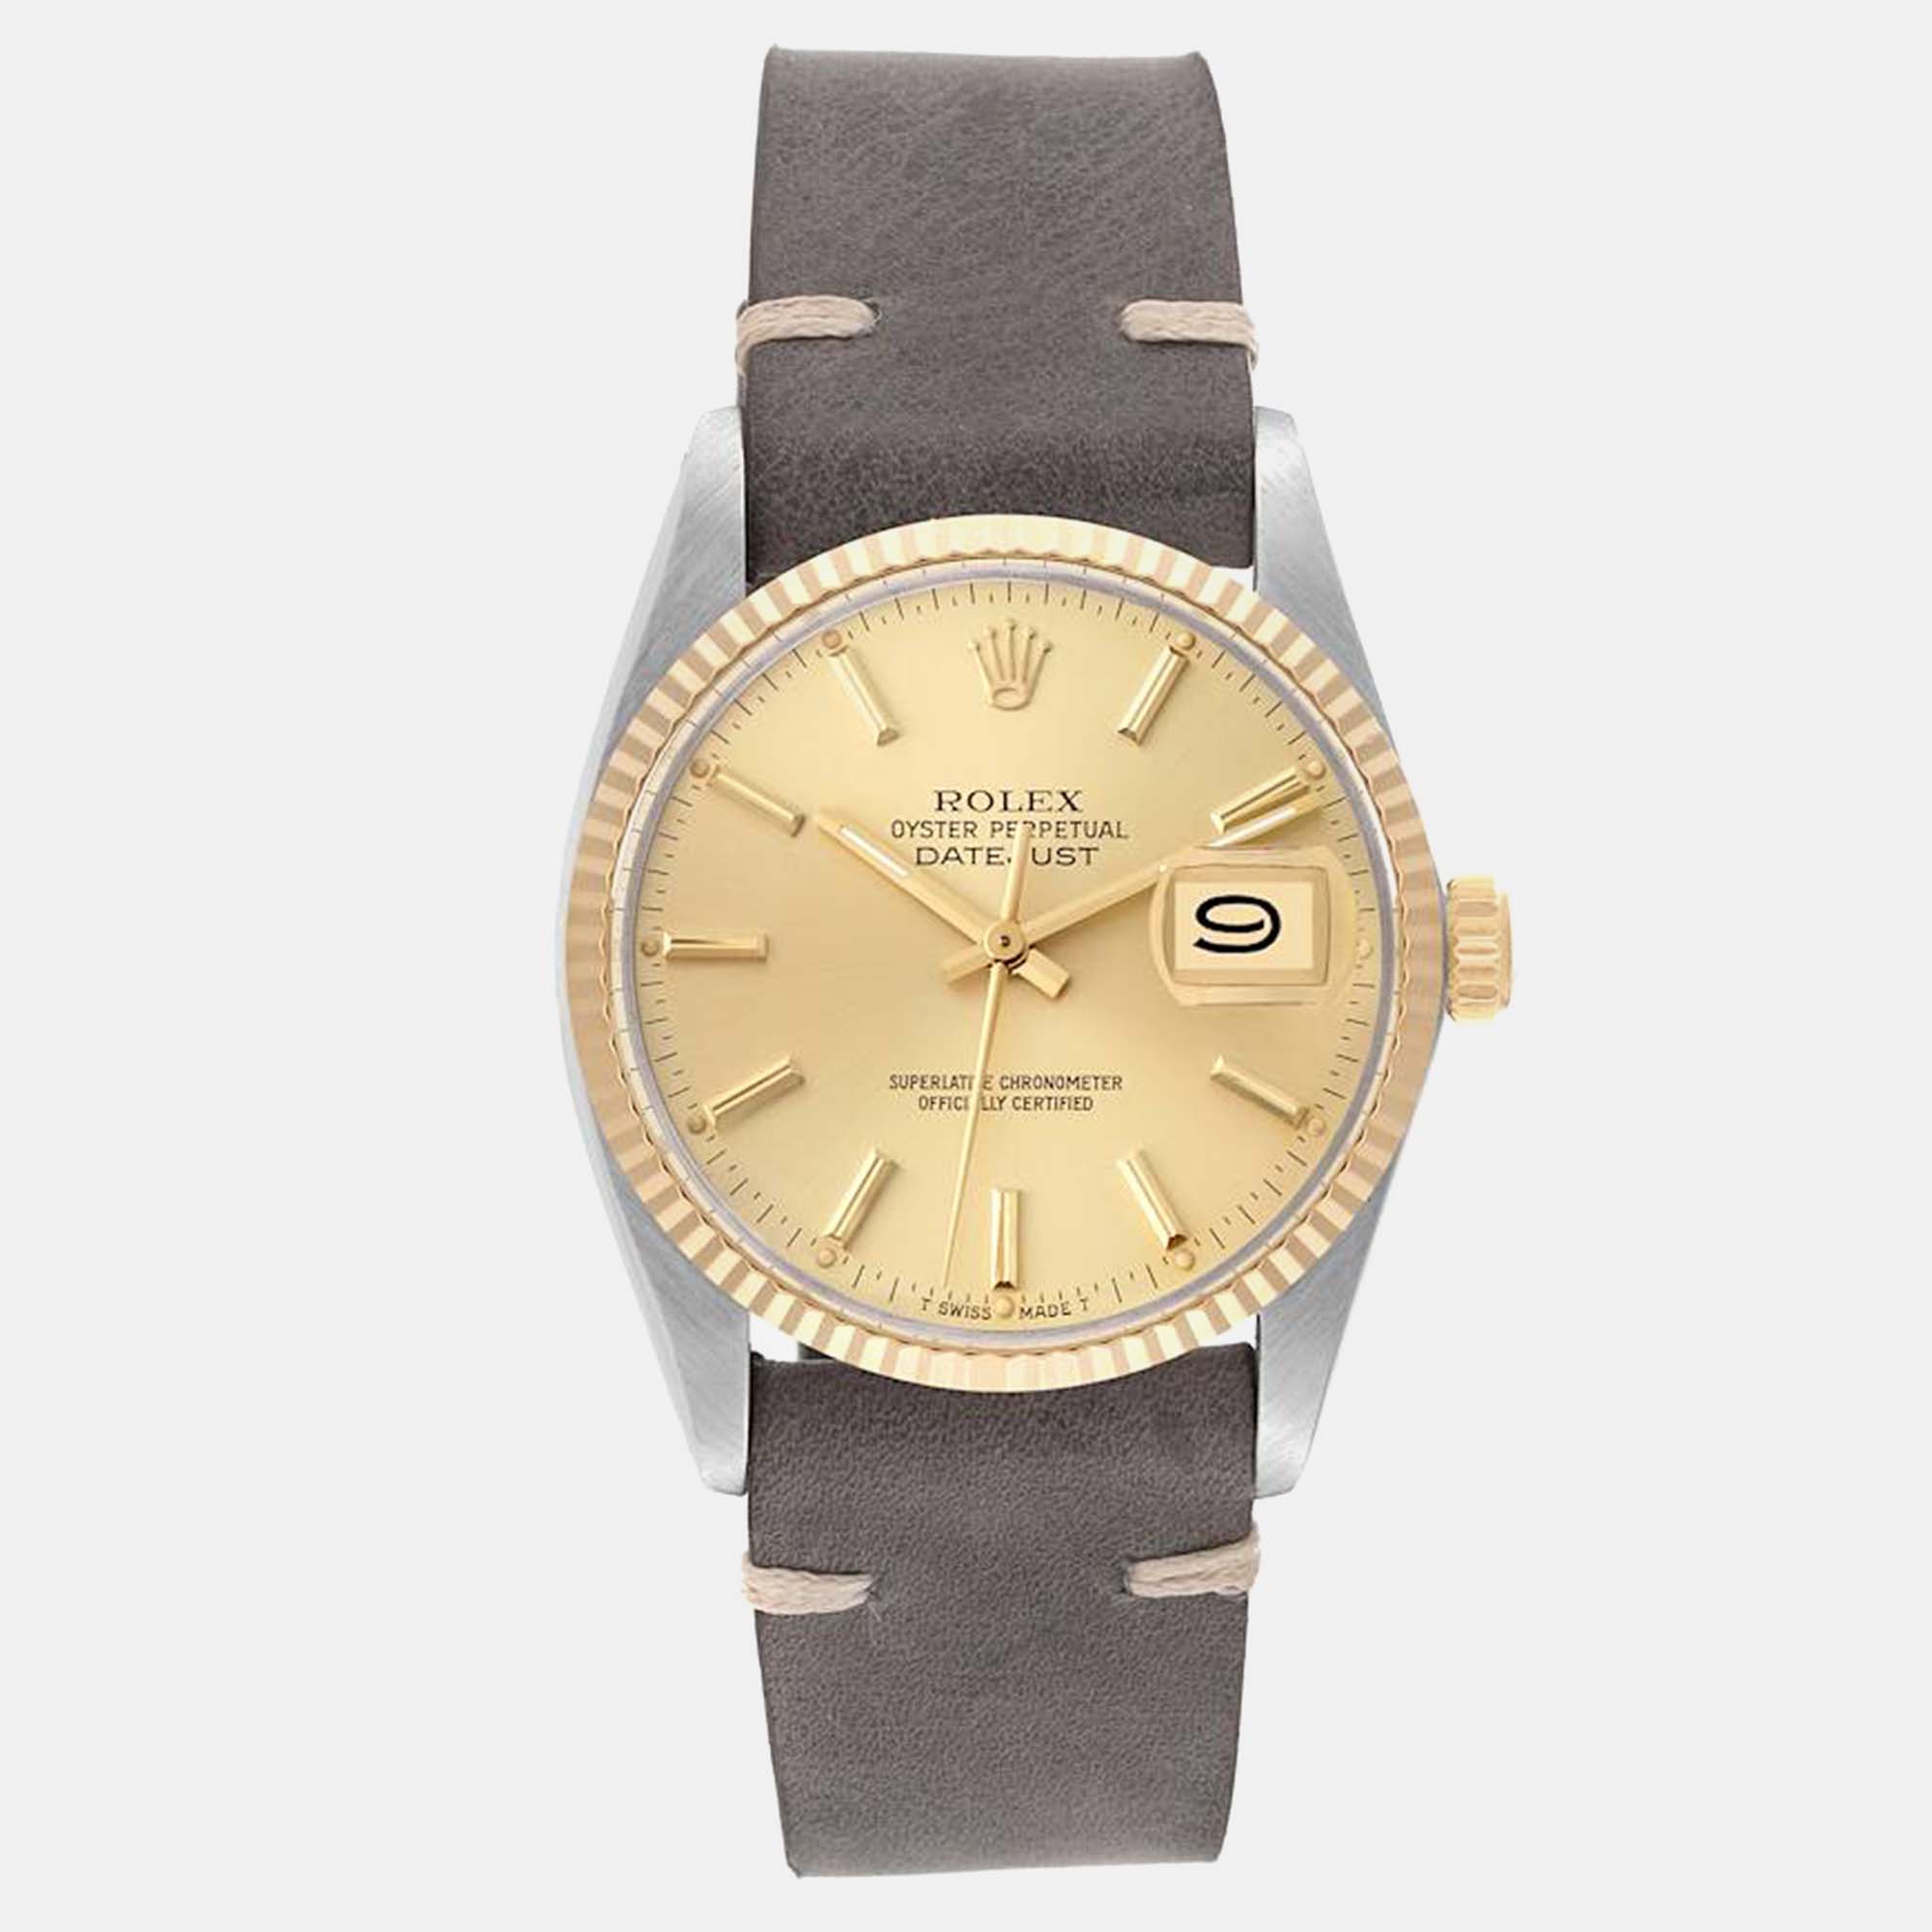 Rolex datejust steel yellow gold vintage men's watch 36 mm